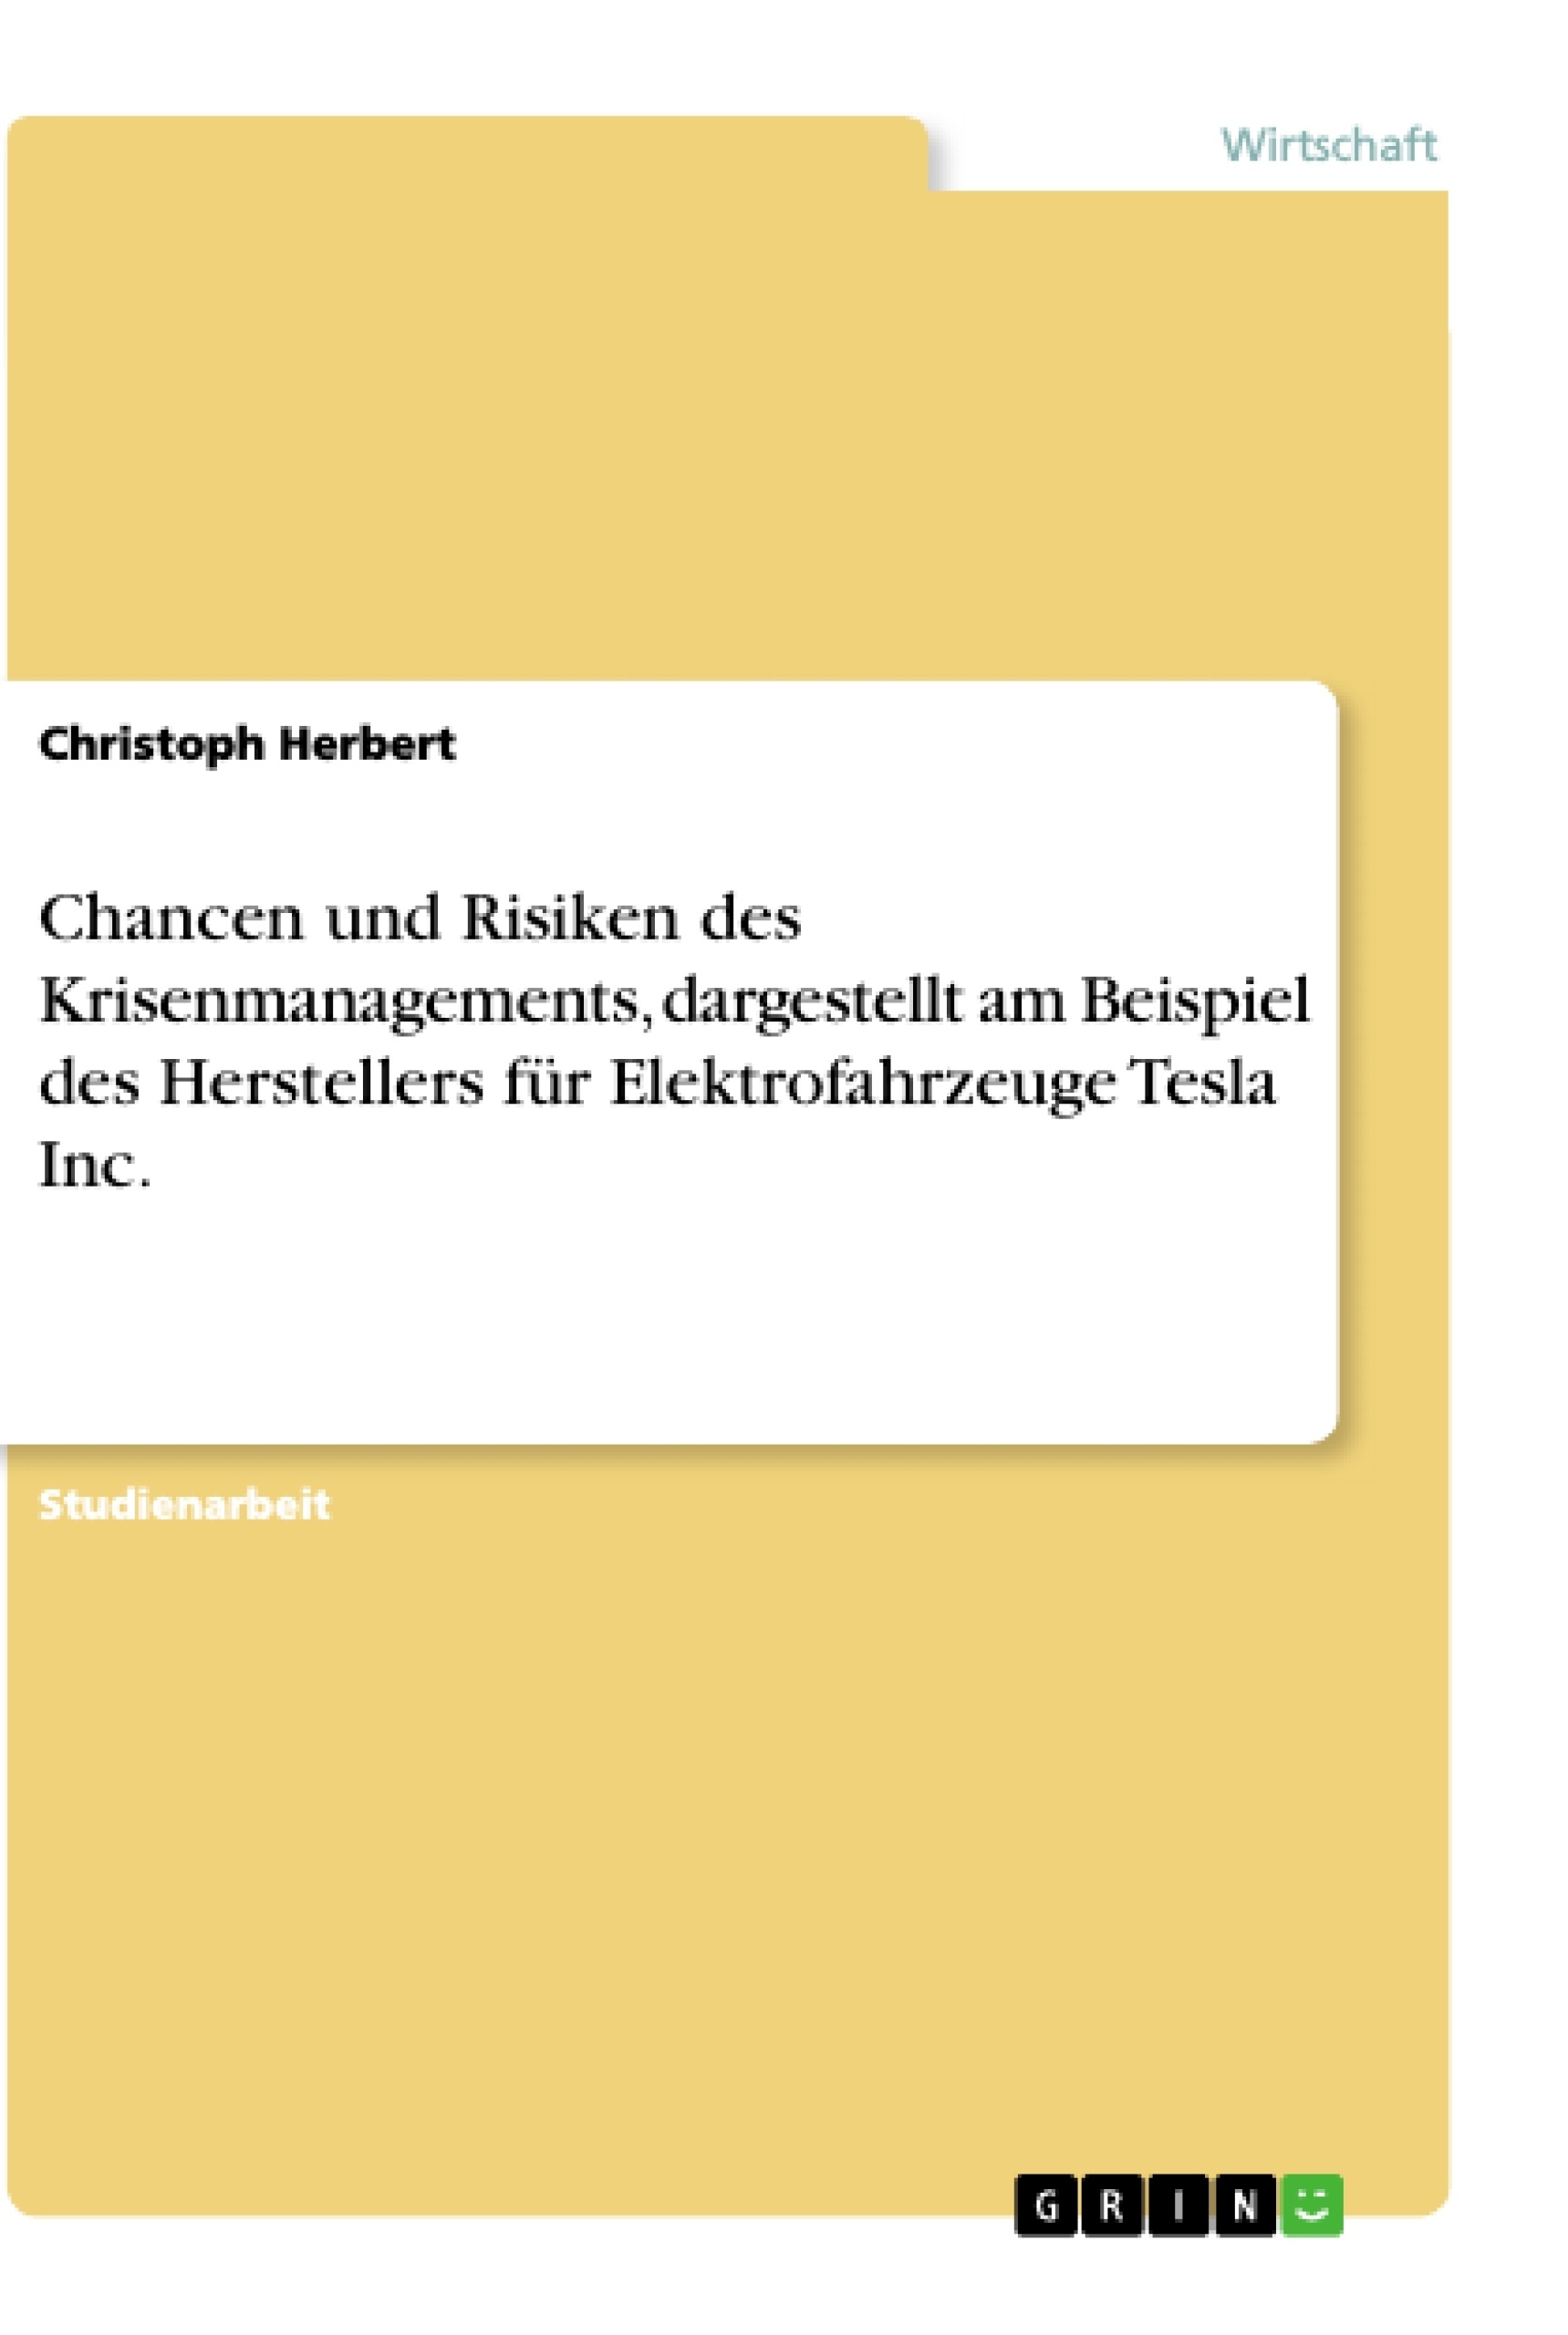 Titel: Chancen und Risiken des Krisenmanagements, dargestellt am Beispiel des Herstellers für Elektrofahrzeuge Tesla Inc.